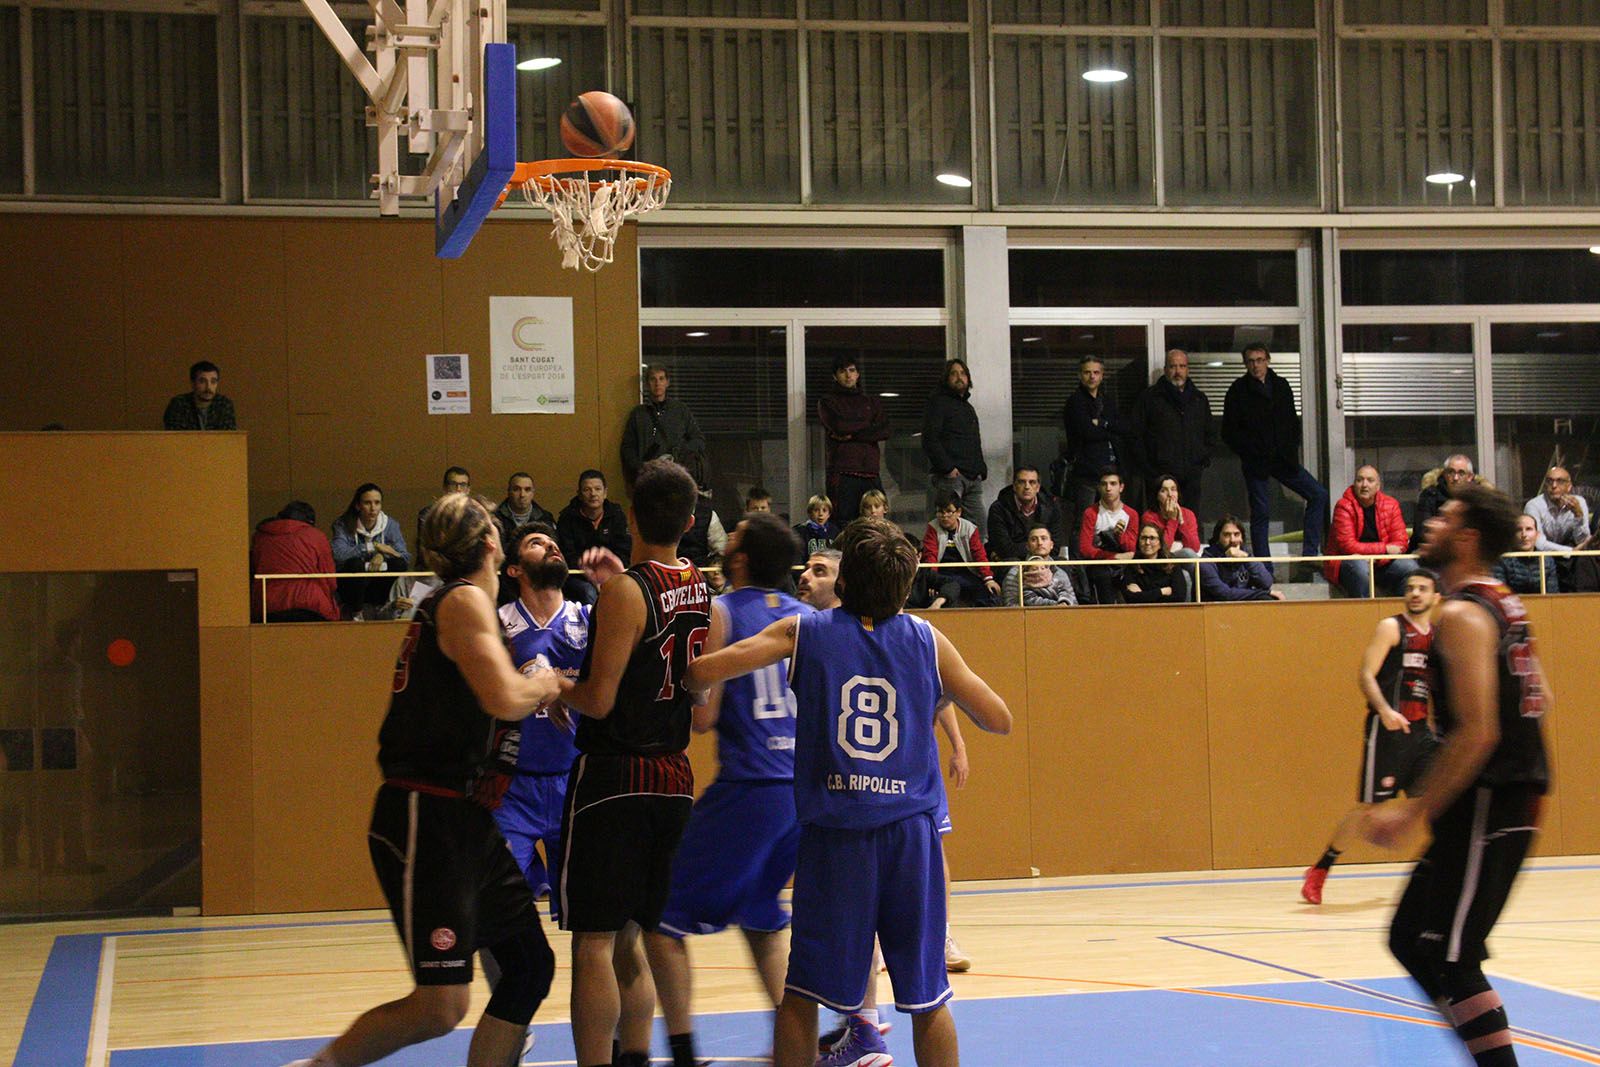 Lliga de Bàsquet: UE Sant Cugat-CB Ripollet. Foto: Lali Álvarez